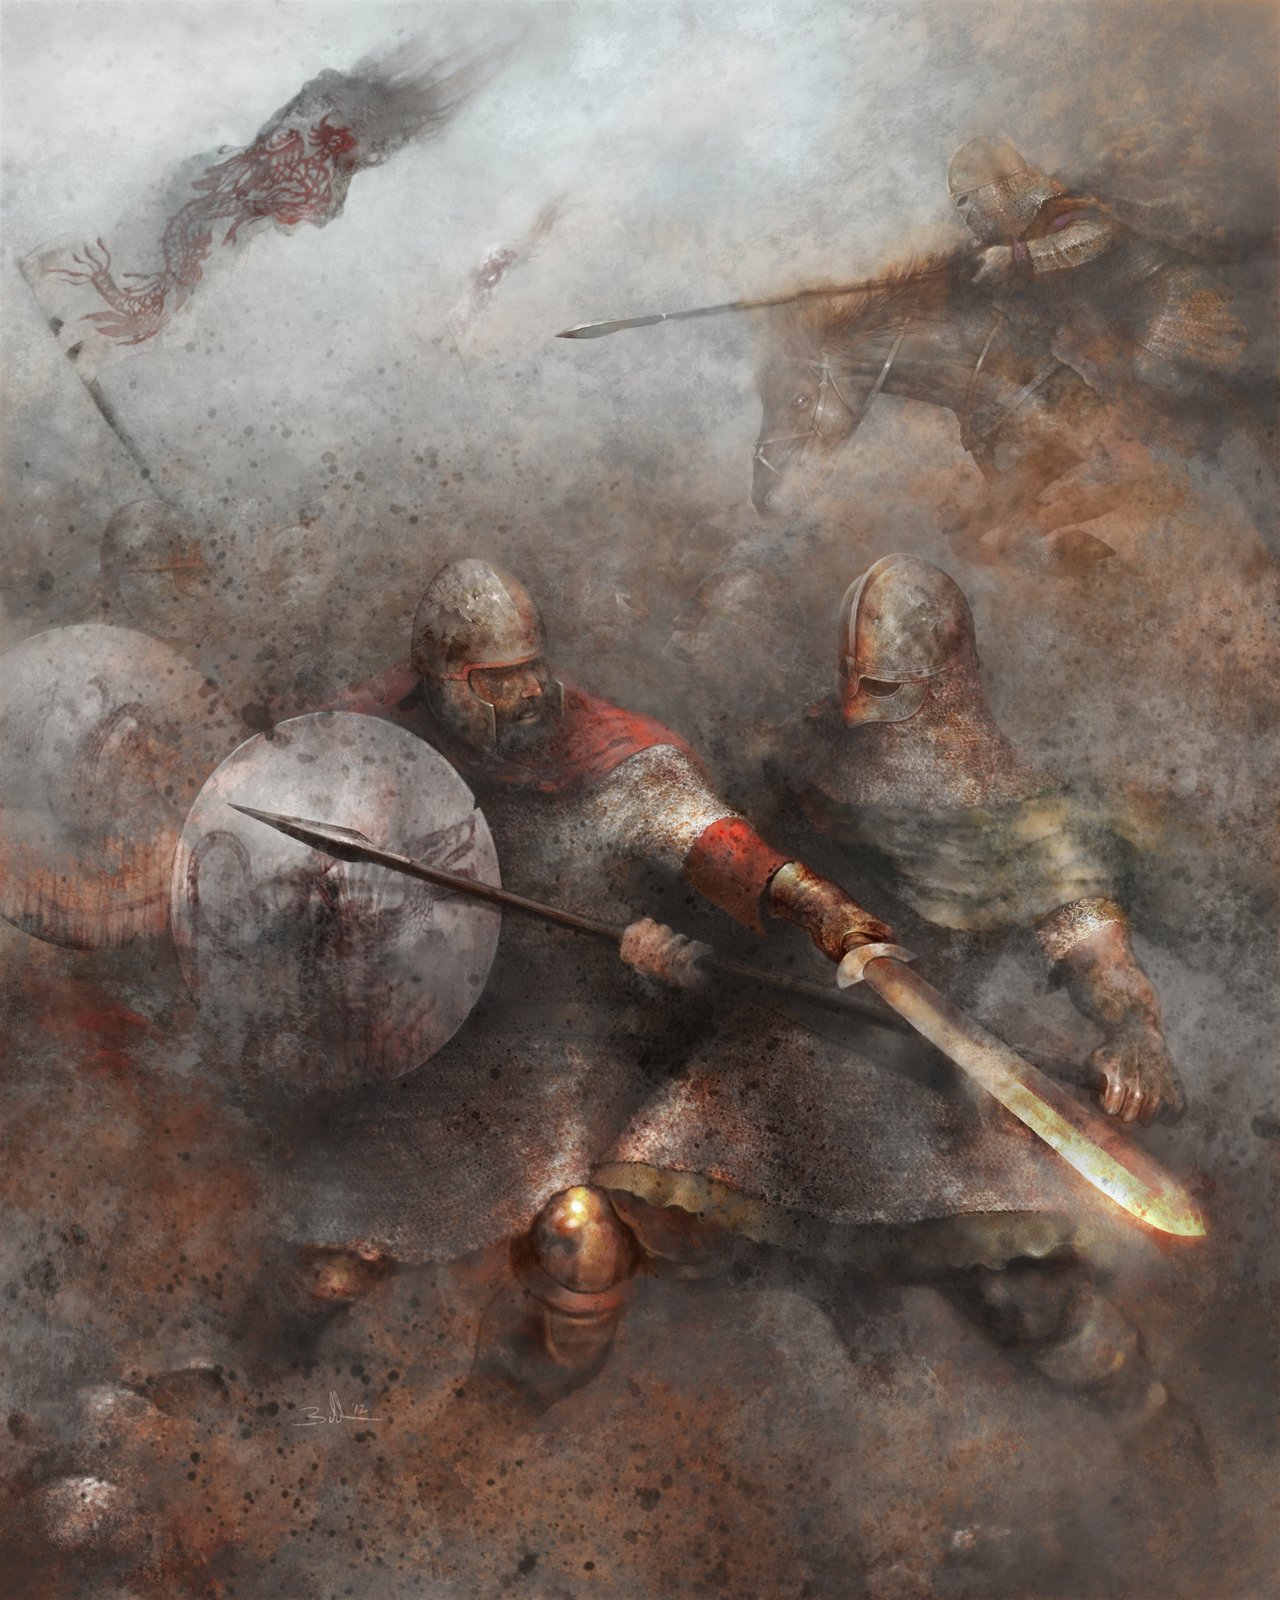 age of arthur battle by behnkestudio-d5nerlo jason behnke artist